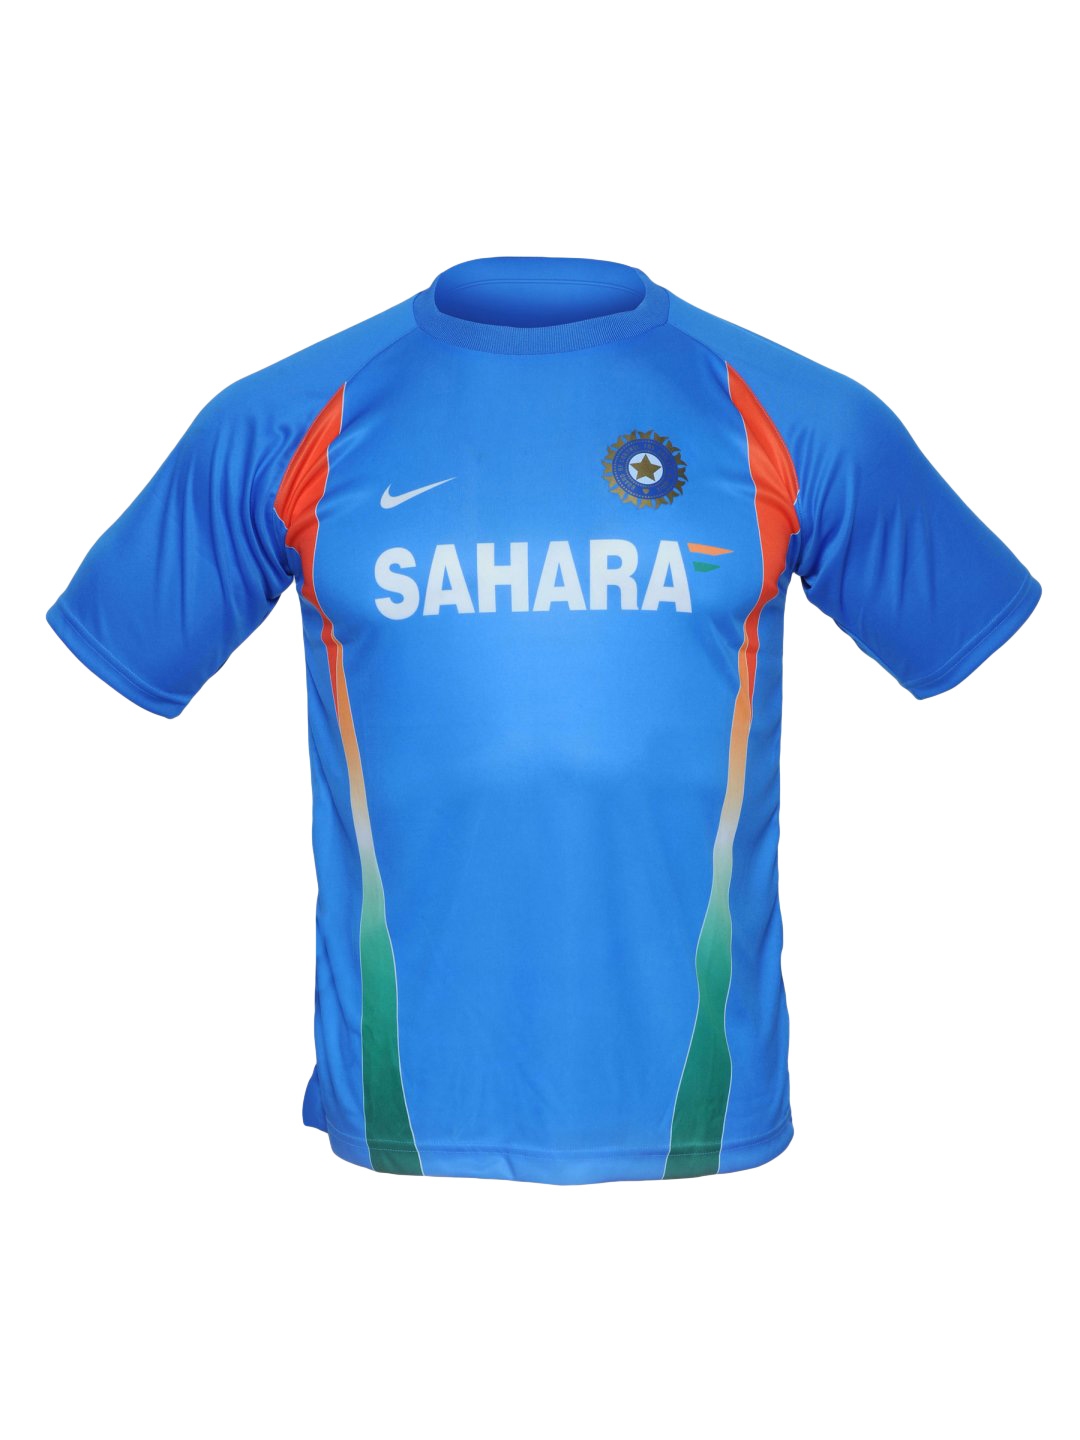 sahara t shirt india